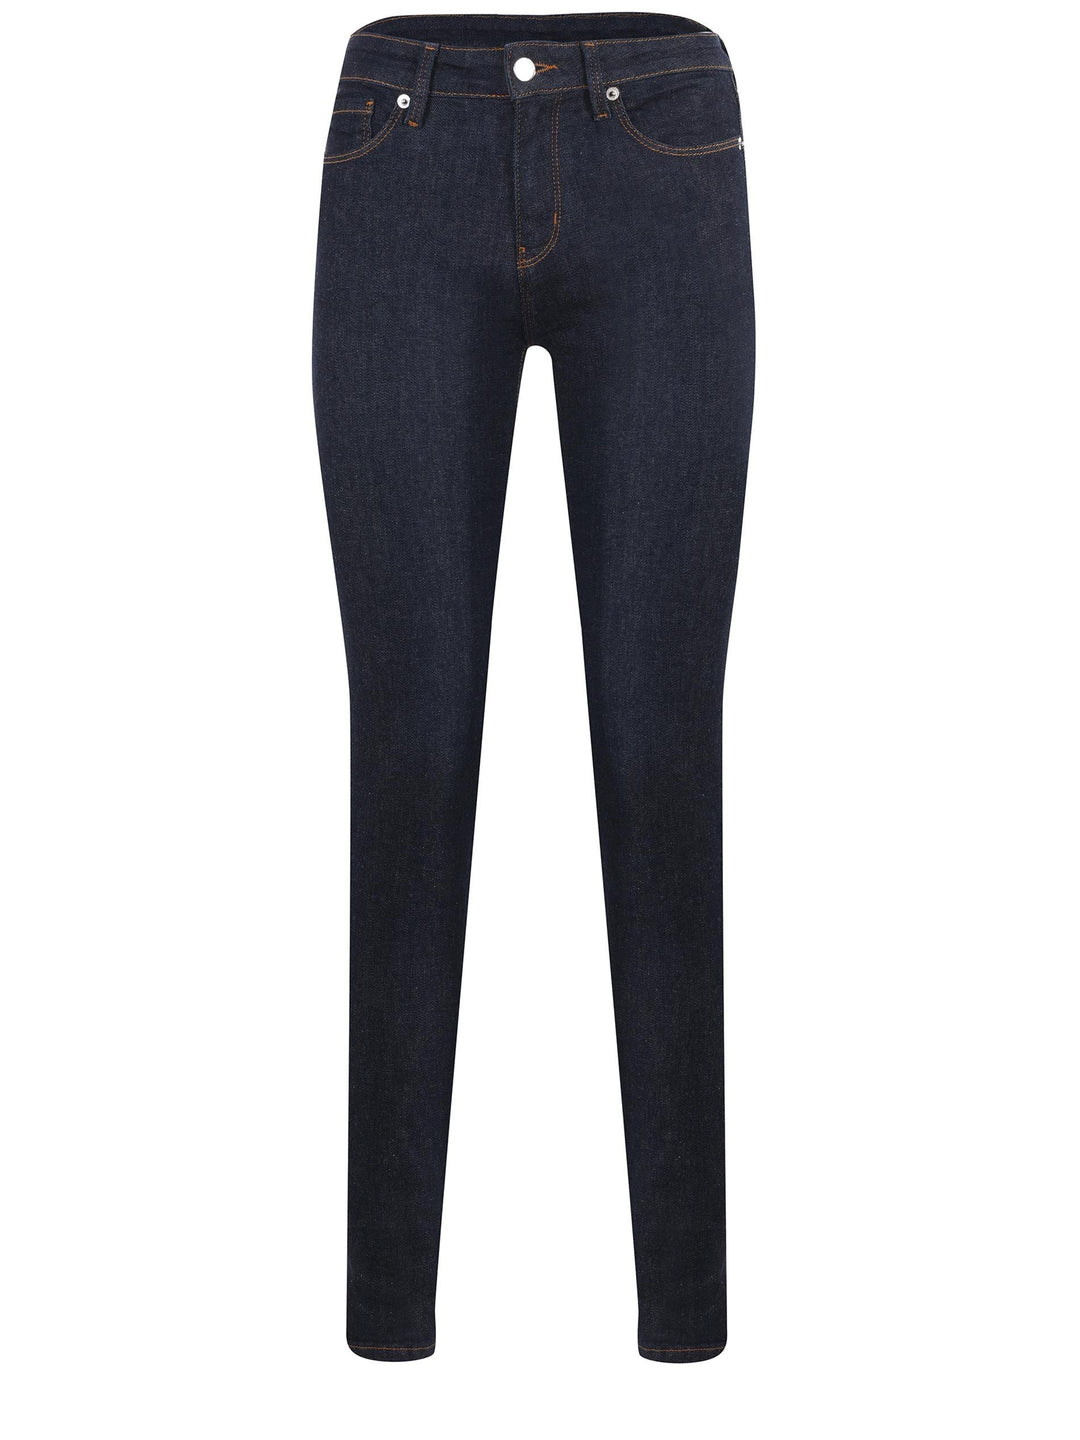 Love Moschino Chic Dark Blue Slim Fit Designer Jeans